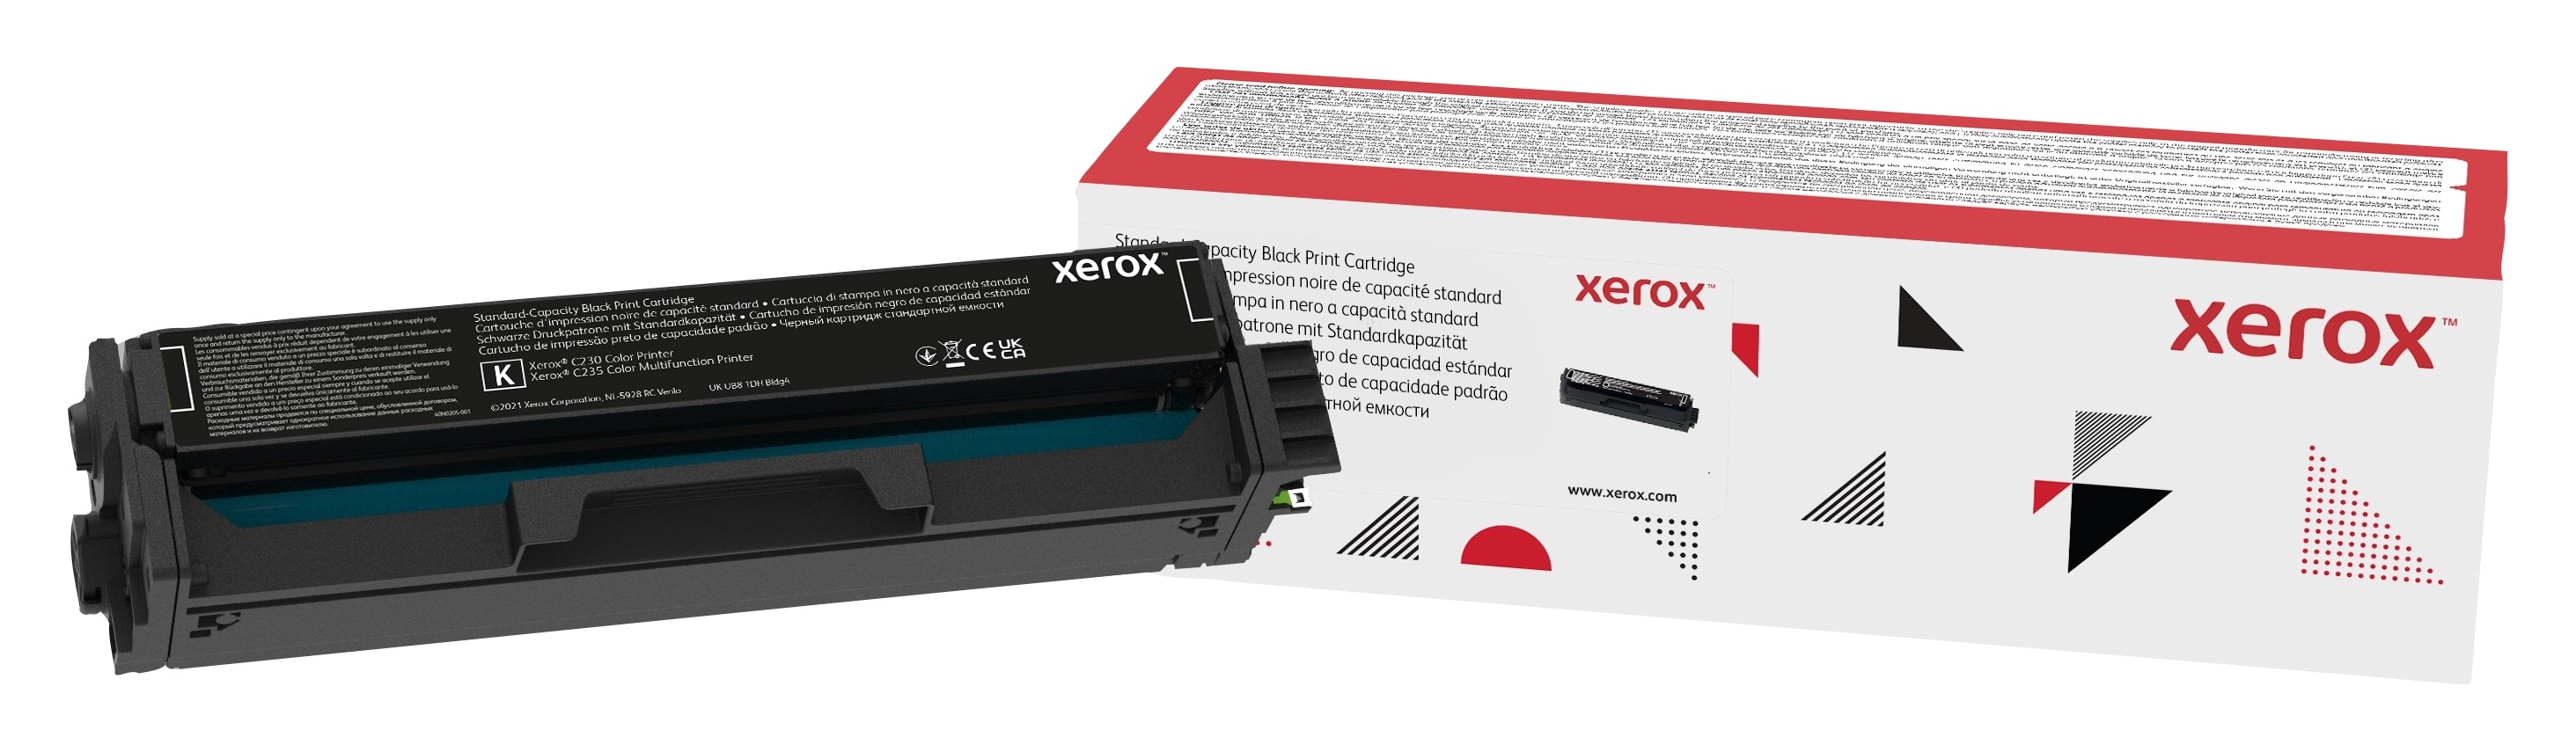 Xerox C230/C235 - Cartouche de toner noir capacité standard (1 500 pages)